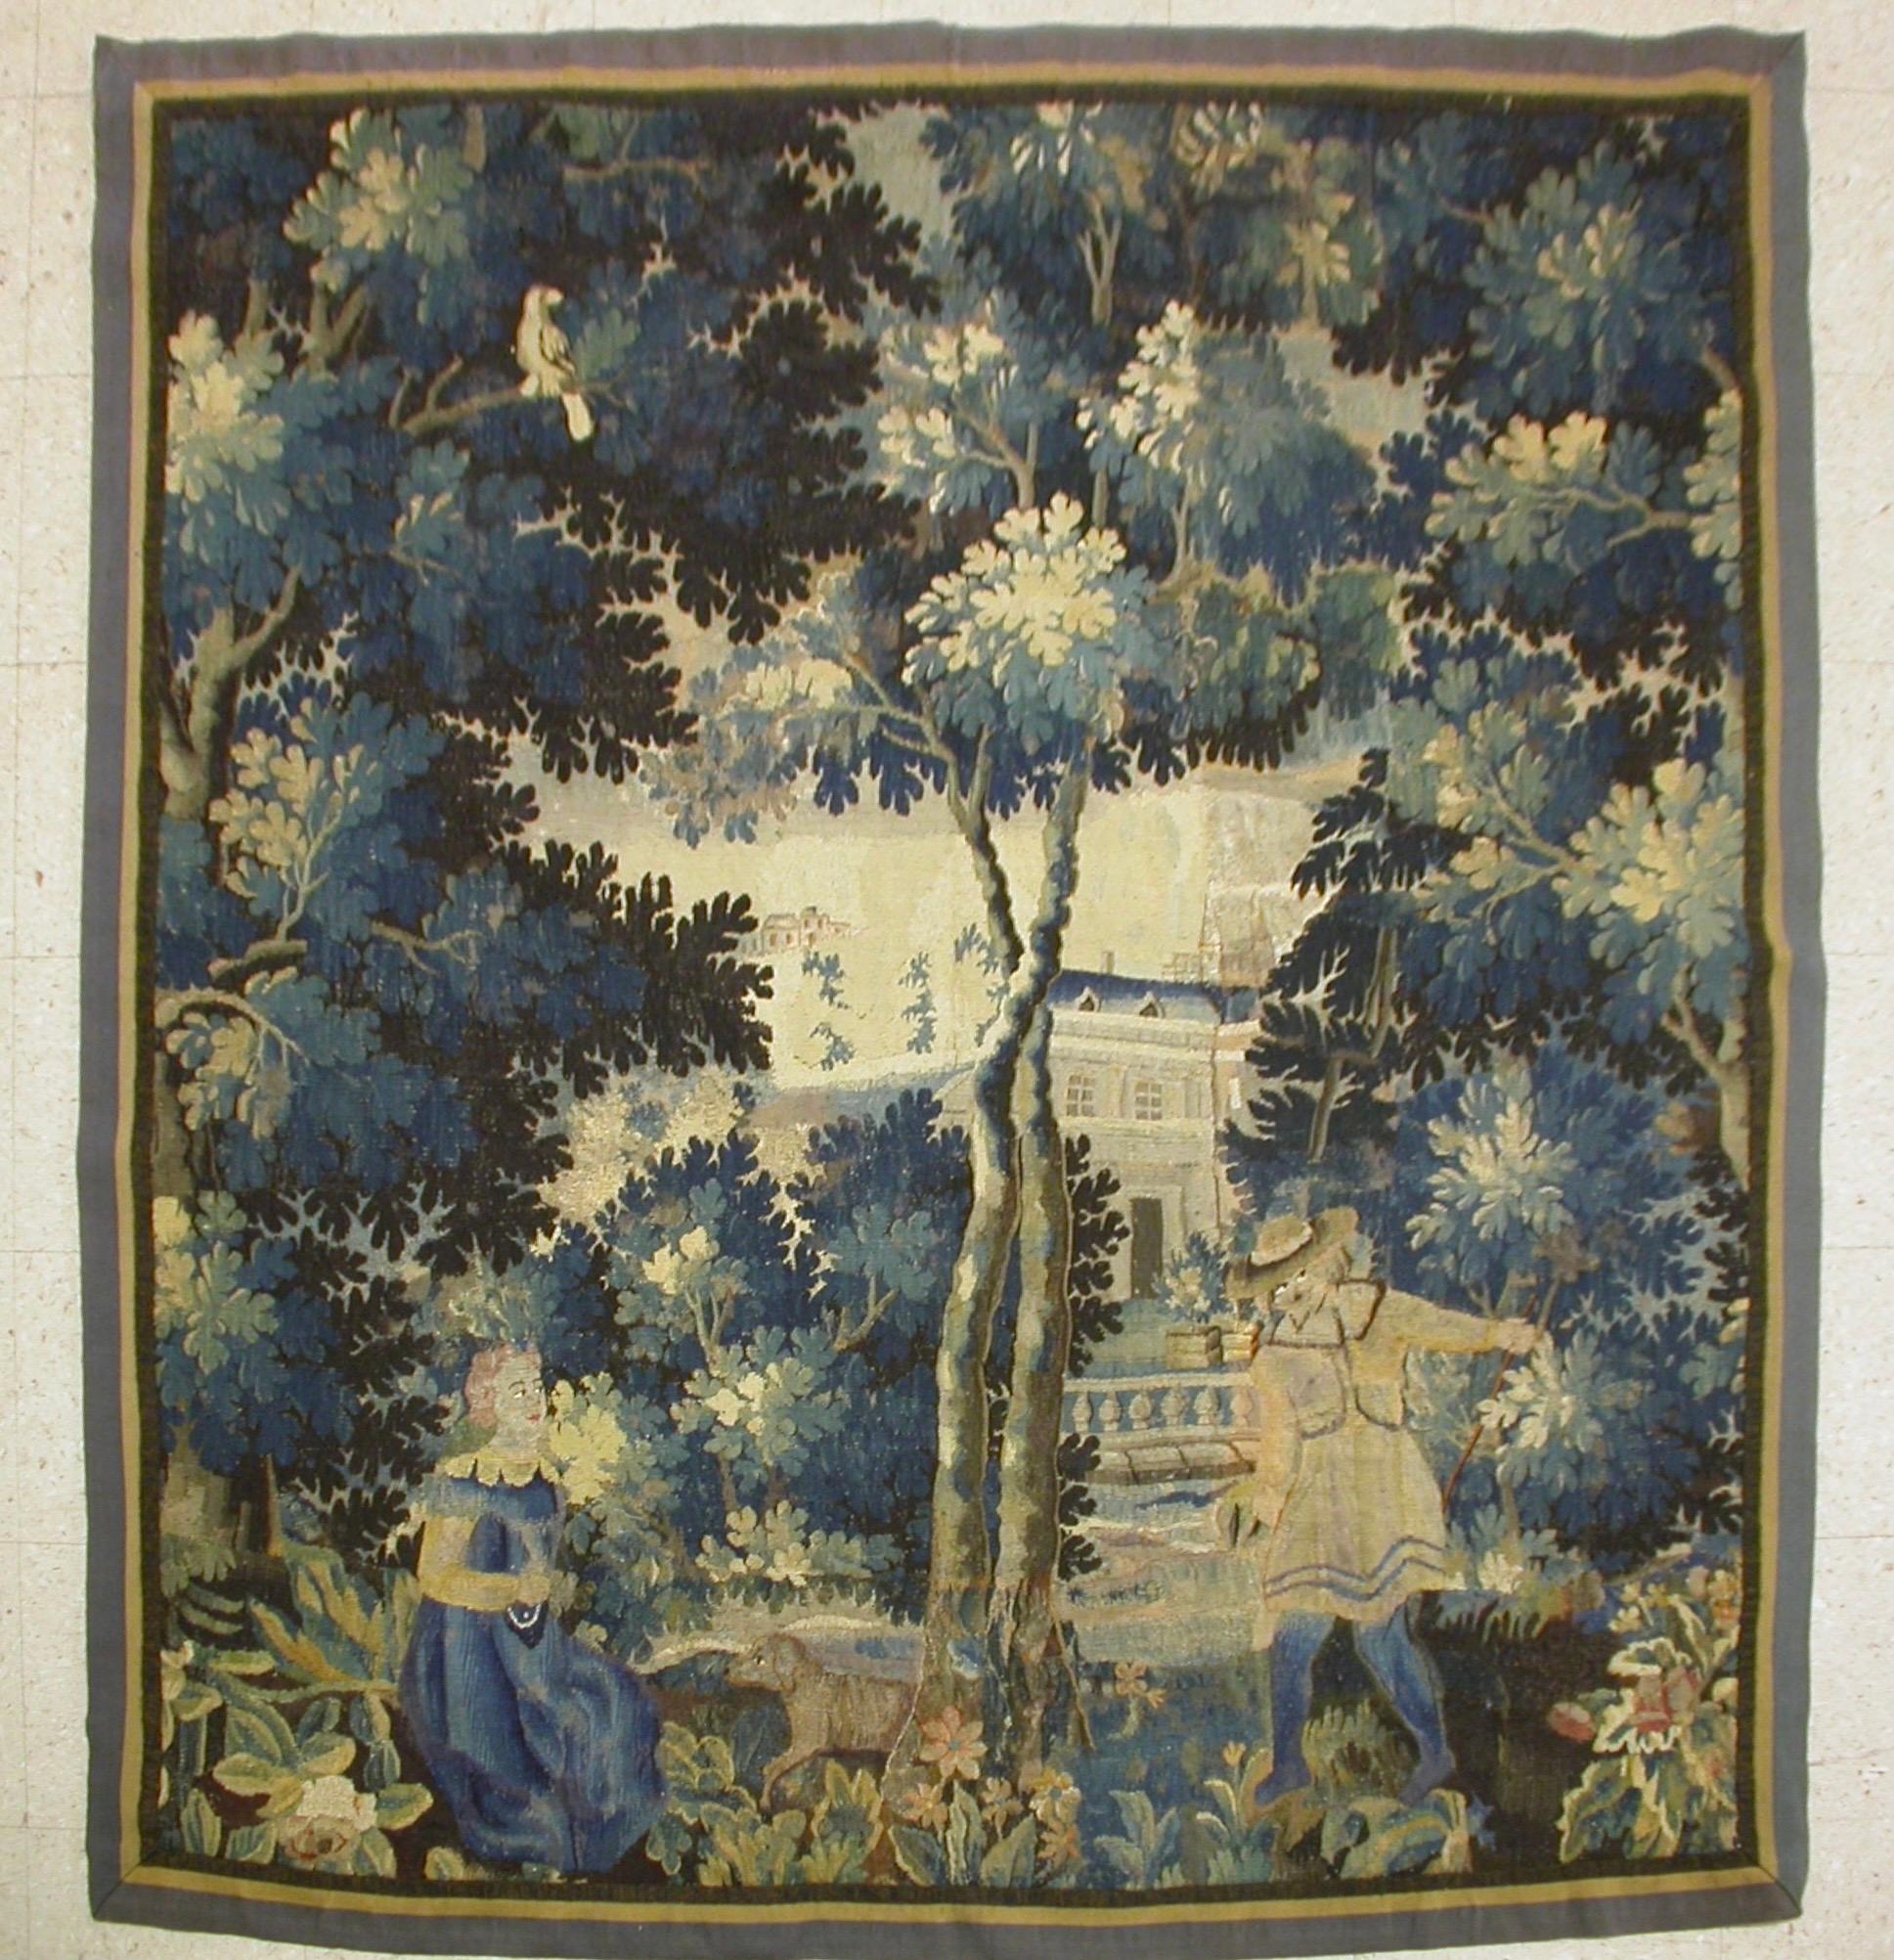 Dies ist eine wunderschöne antike quadratische 17. Jahrhundert flämischen Verdure Landschaft Wandteppich mit zwei leichten Figuren in einer schönen und reichen Sommer-Szene von einer Landschaft mit üppigen Bäumen und Vegetation und Häuser in der